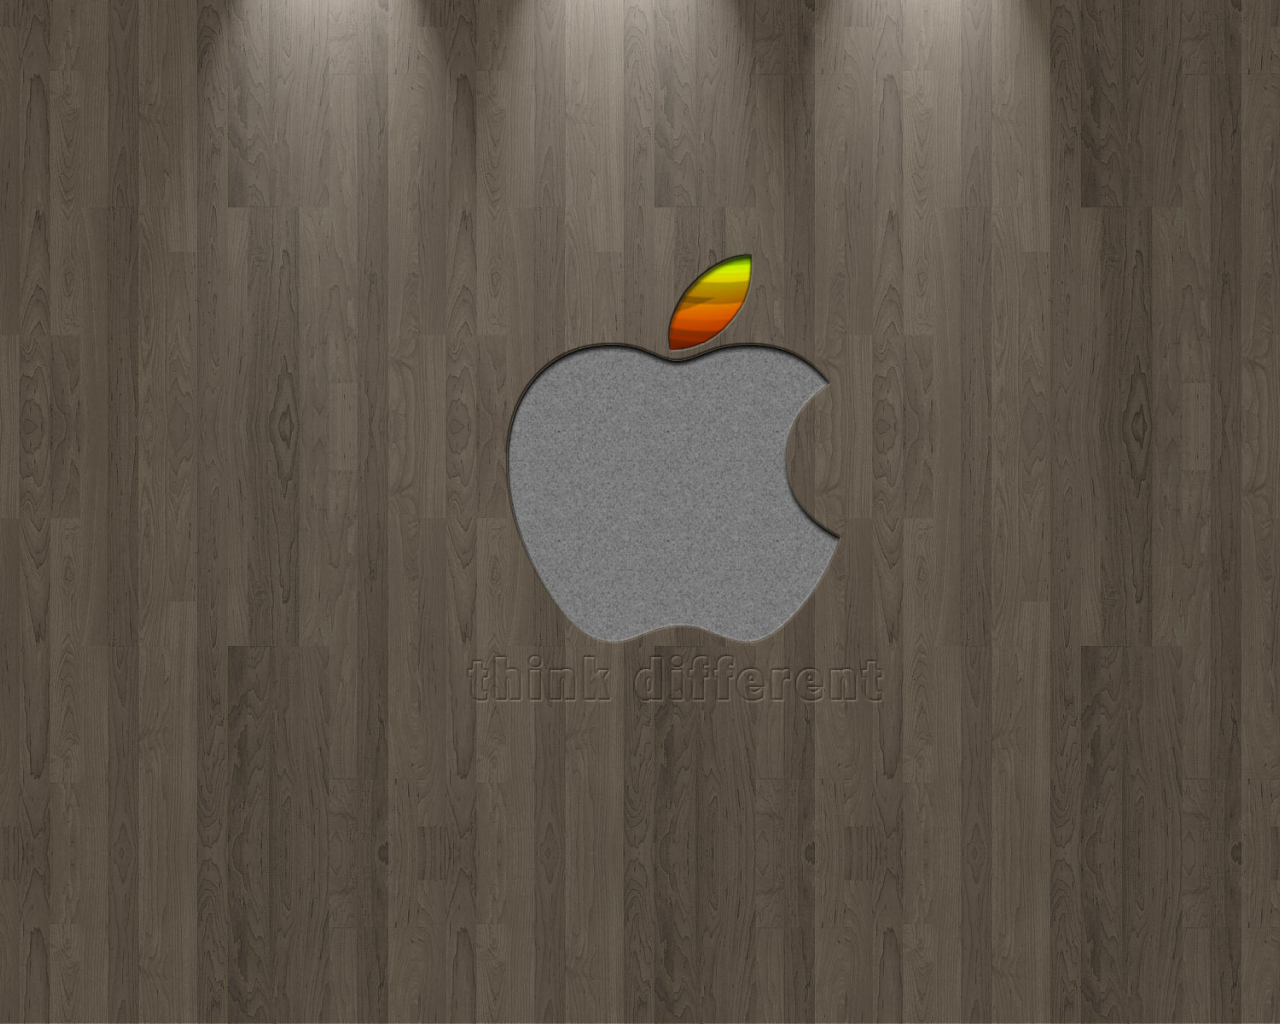 pattern, logo, apple